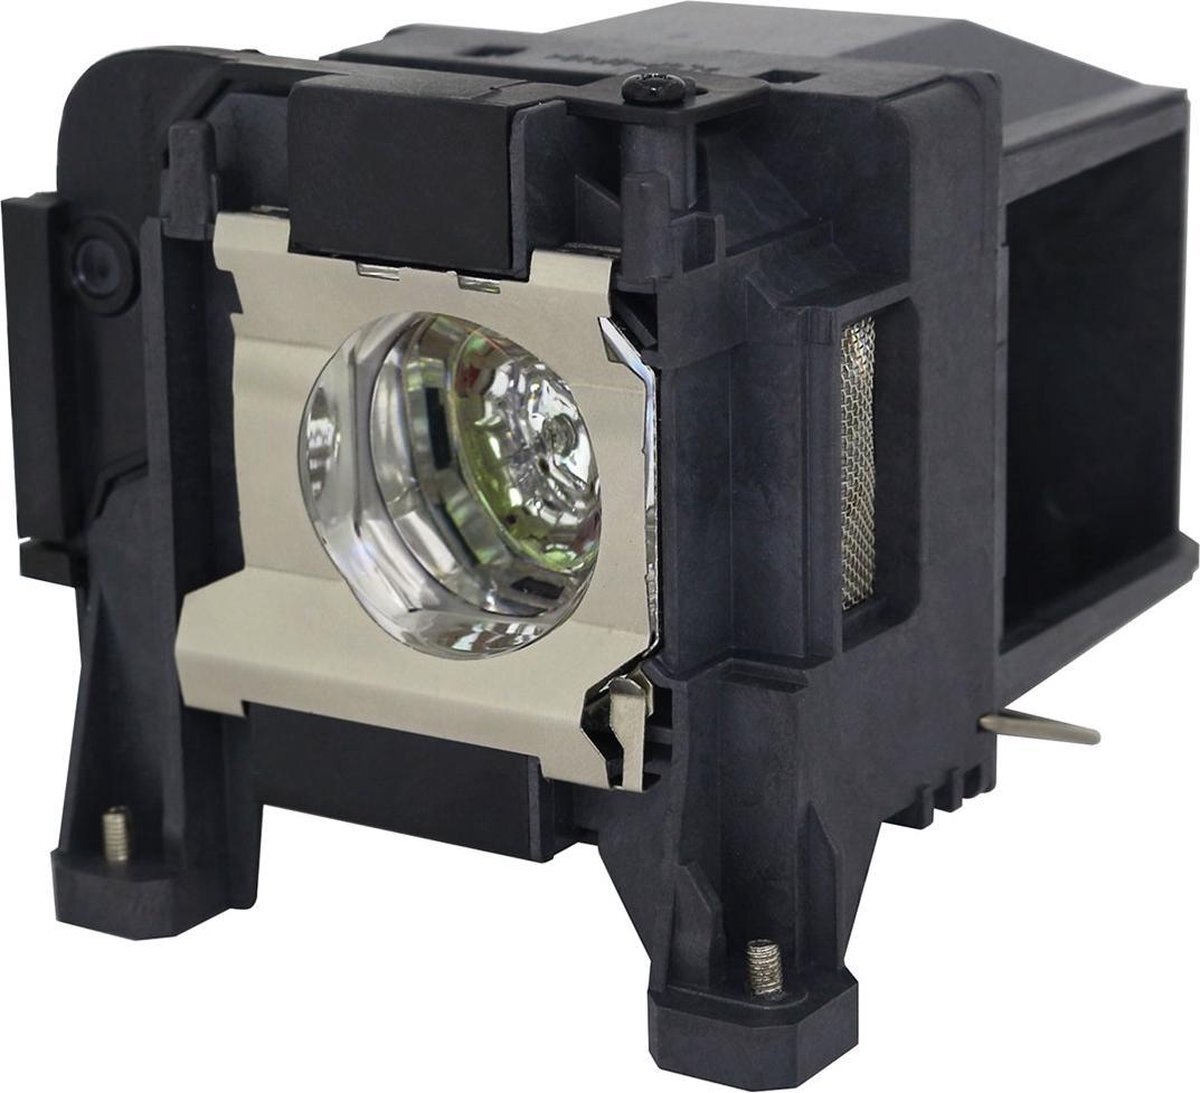 QualityLamp EPSON H932A beamerlamp LP89 / V13H010L89, bevat originele P-VIP lamp. Prestaties gelijk aan origineel.